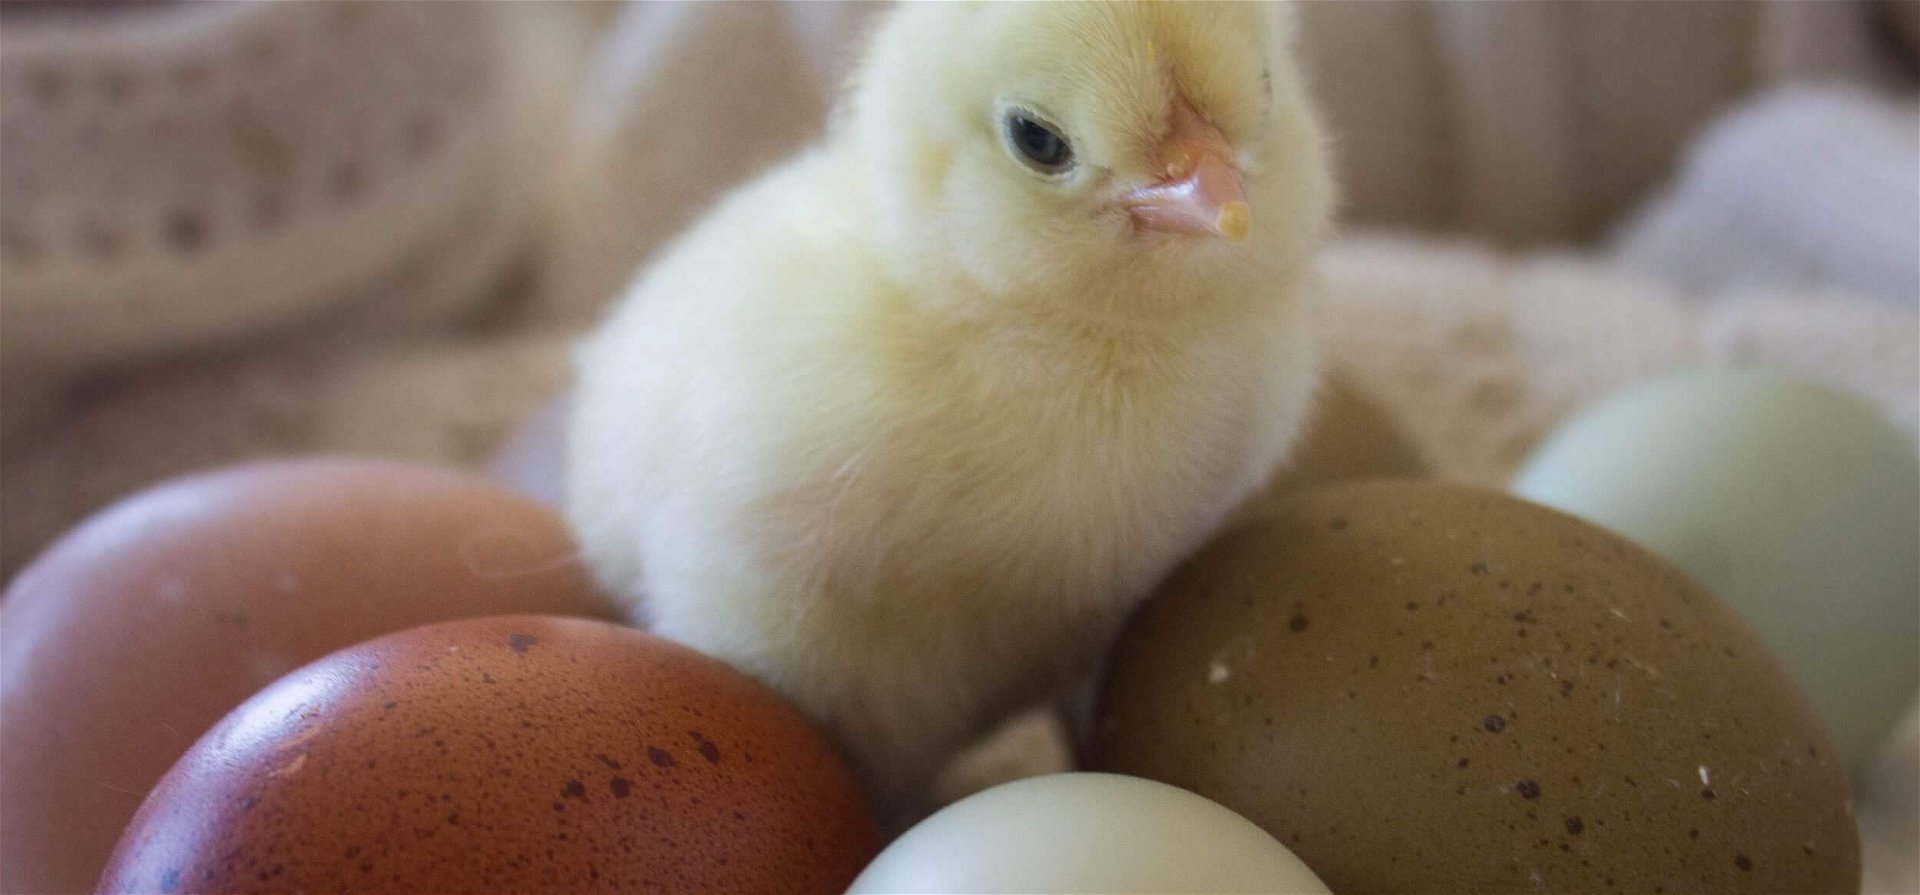 Hihetetlen! Ezek a tyúkok színes tojásokat tojnak!